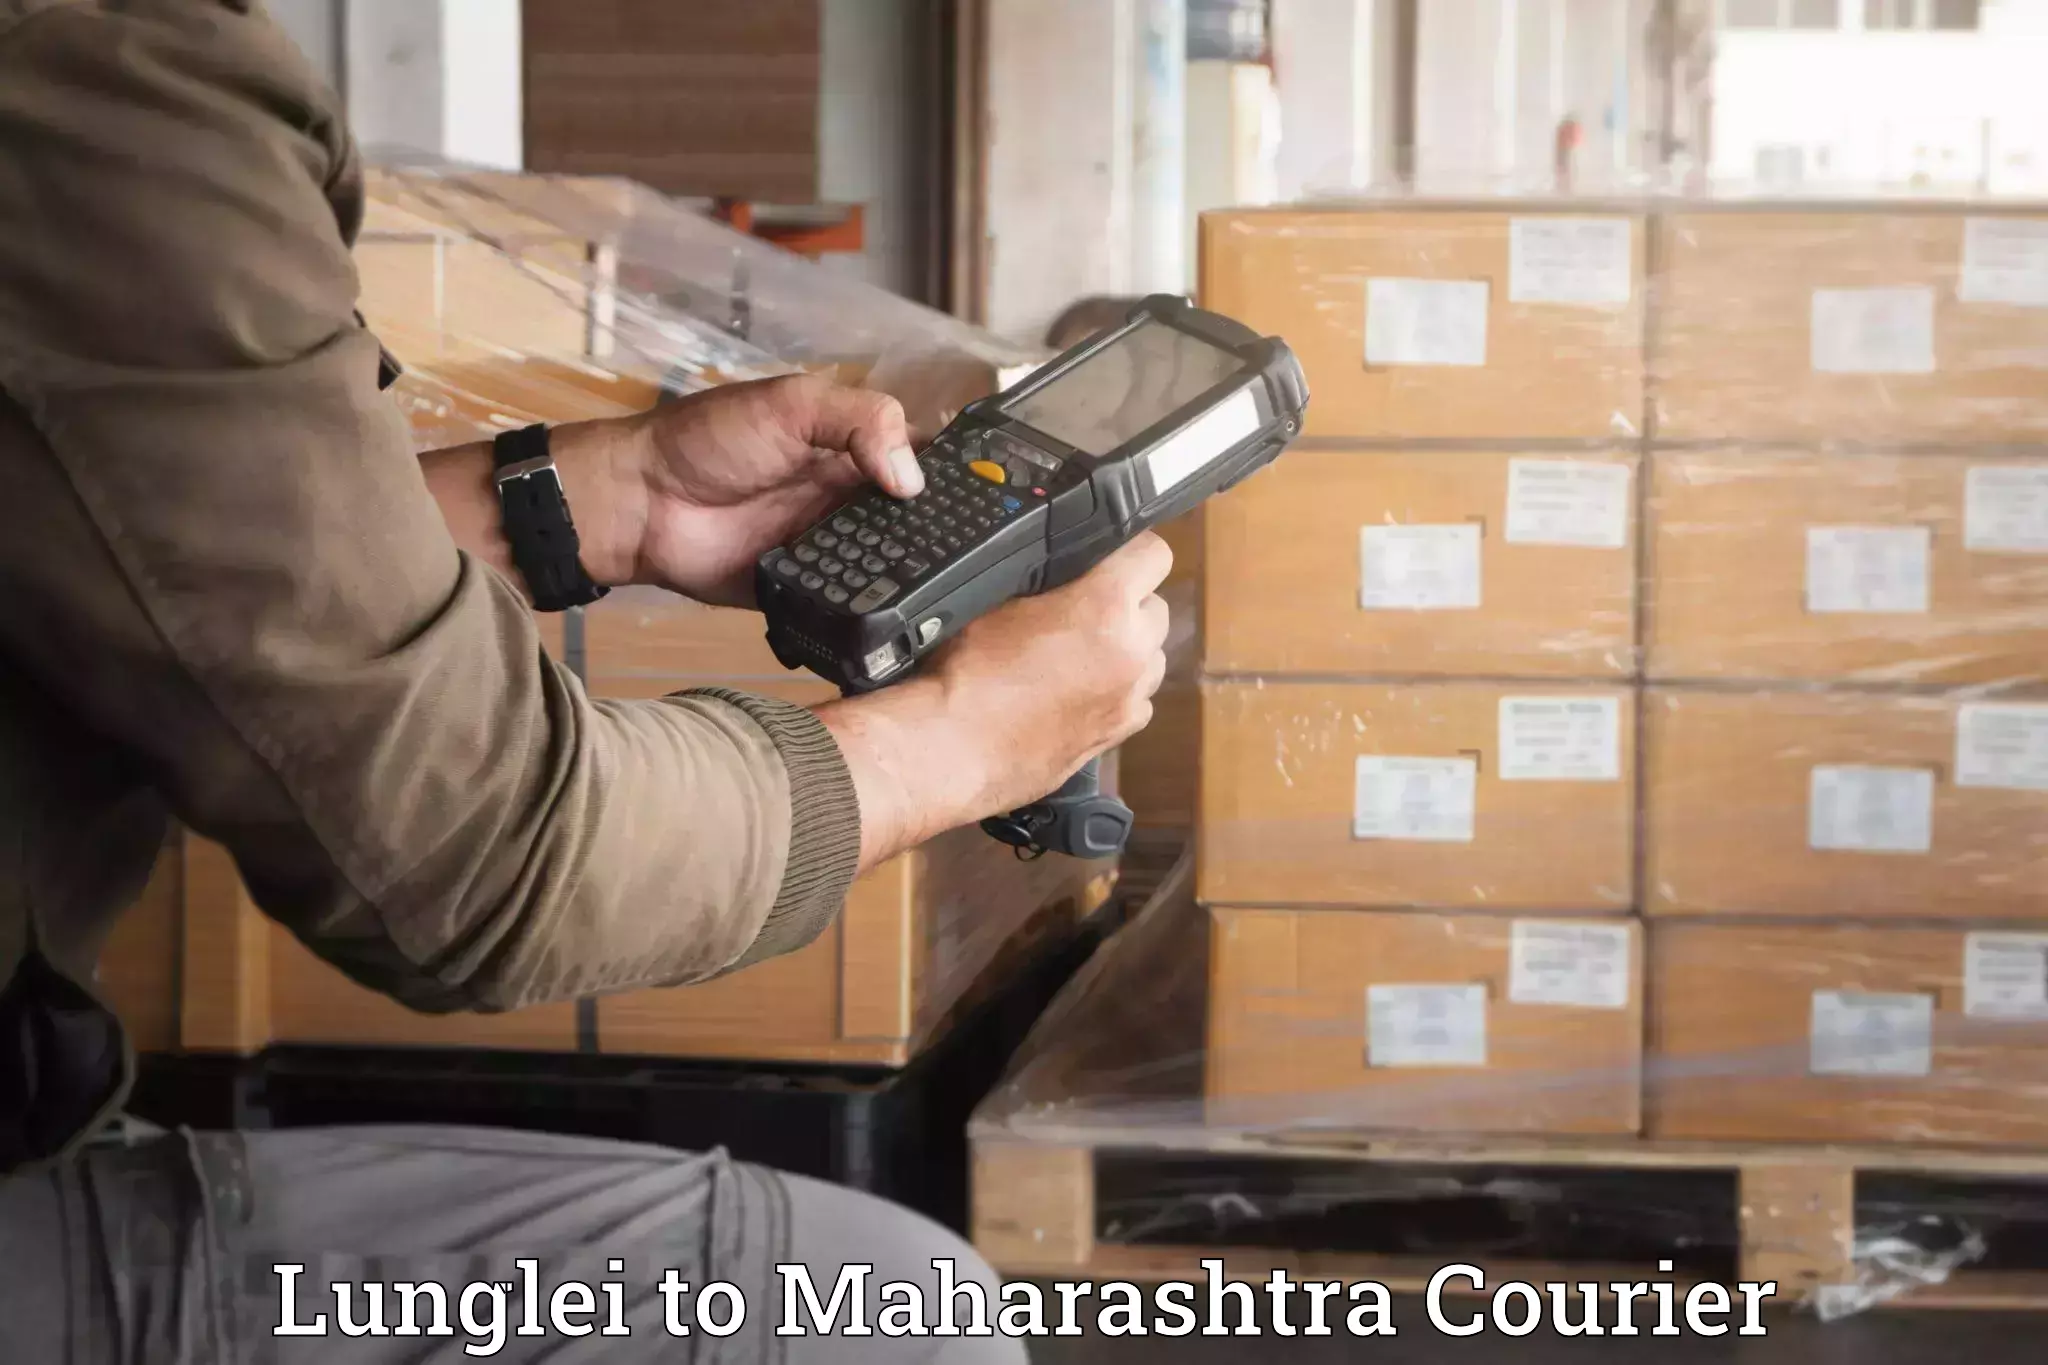 Professional movers Lunglei to Maharashtra